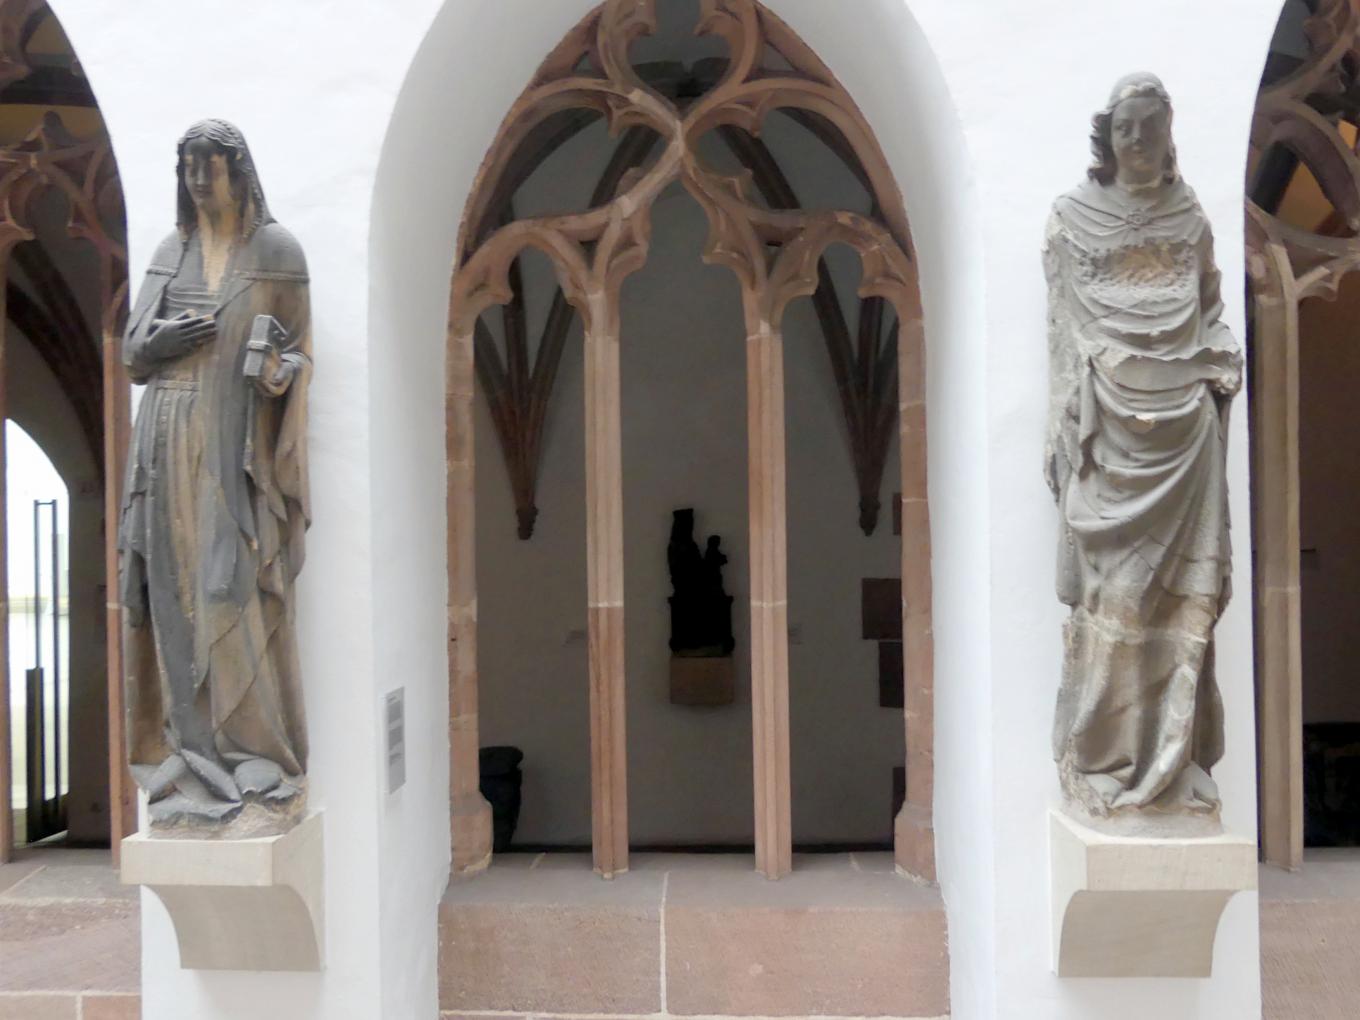 Verkündigung an Maria, Nürnberg, Stadtpfarrkirche Zu Unserer lieben Frau (Frauenkirche), jetzt Nürnberg, Germanisches Nationalmuseum, Saal 31, um 1360, Bild 1/10